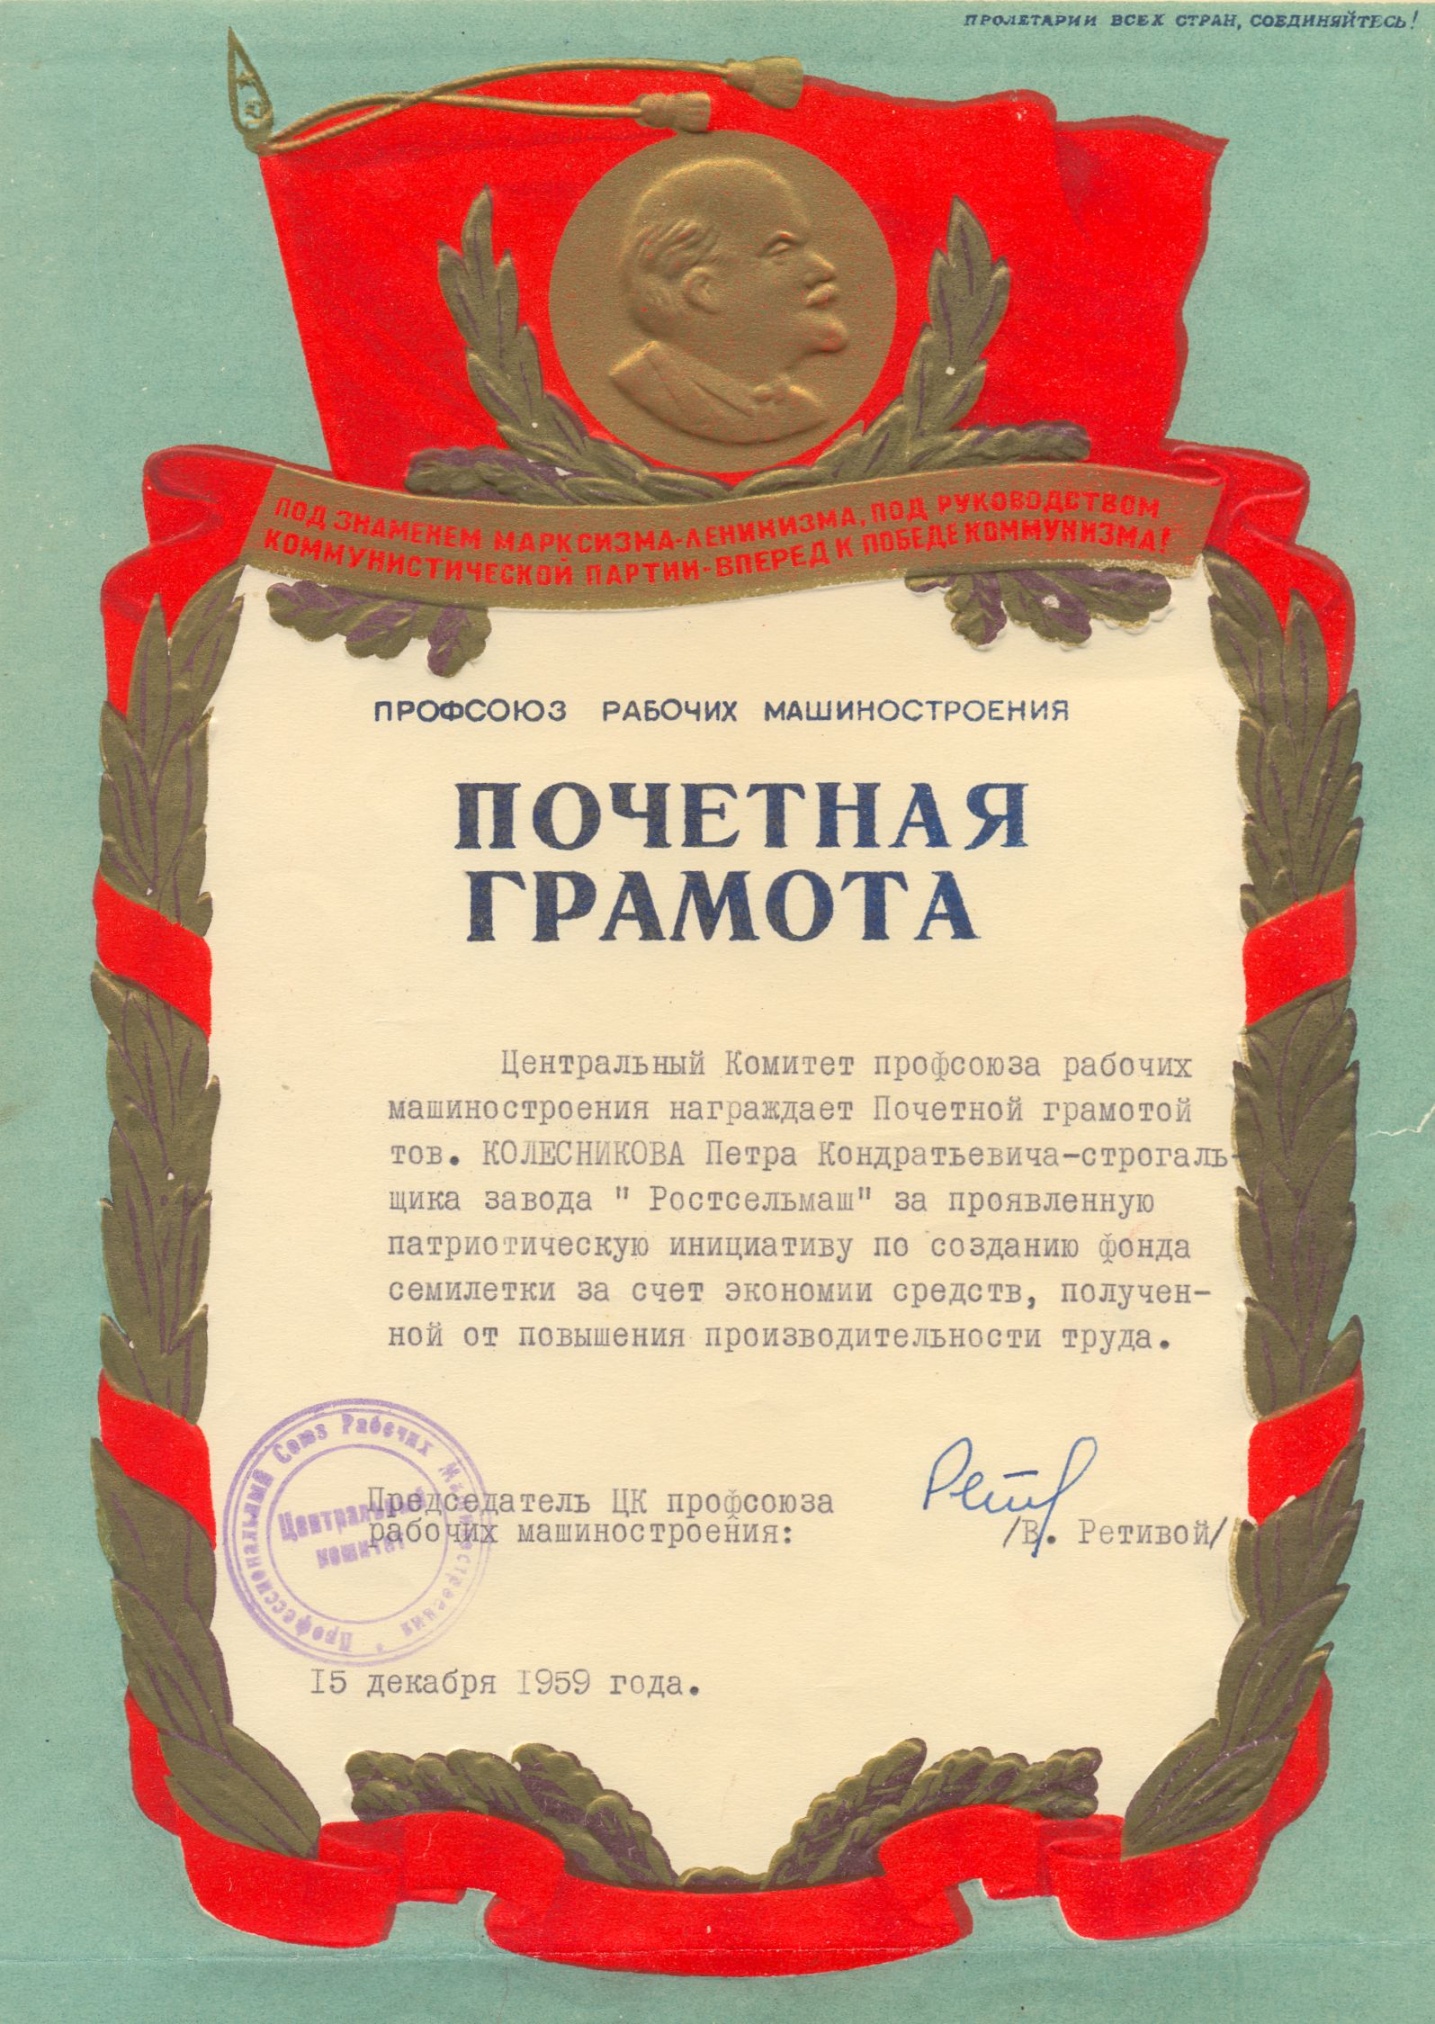 Почётная грамота на имя Колесникова П.К. за проявленную инициативу по созданию фонда семилетки, 15 декабря 1959 года